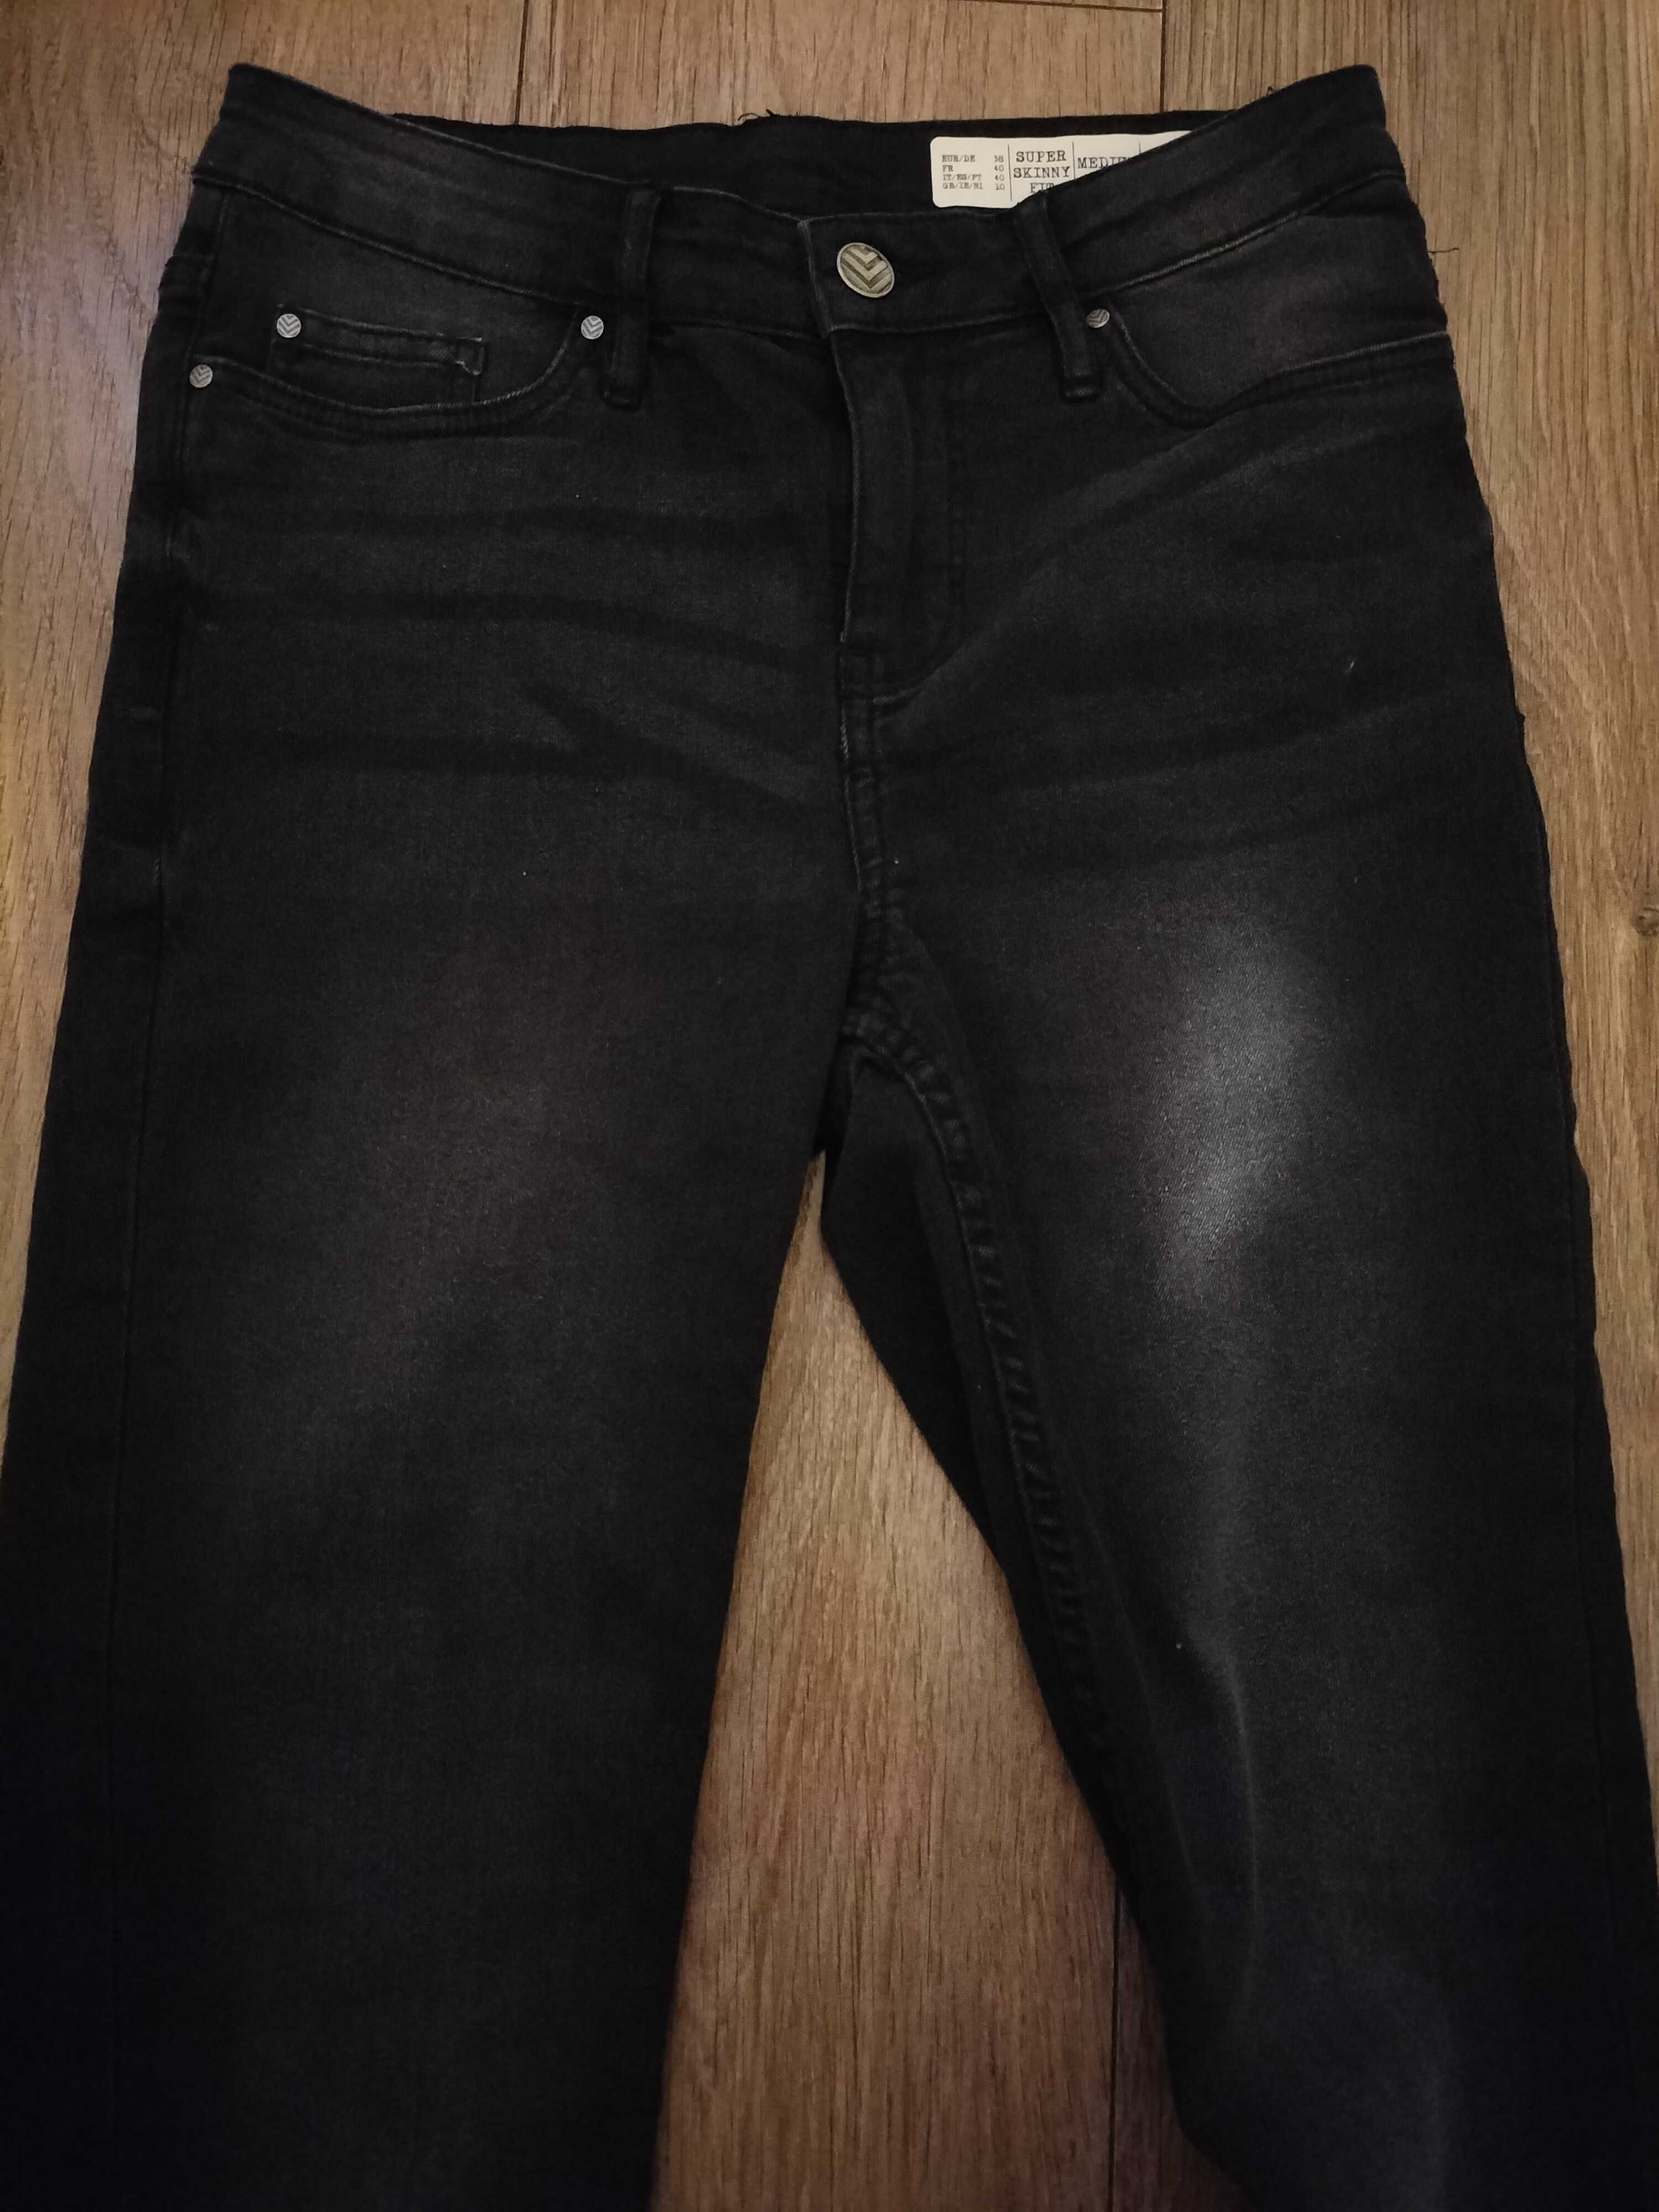 Spodnie damskie dżinsy czarne Nowe bez metki